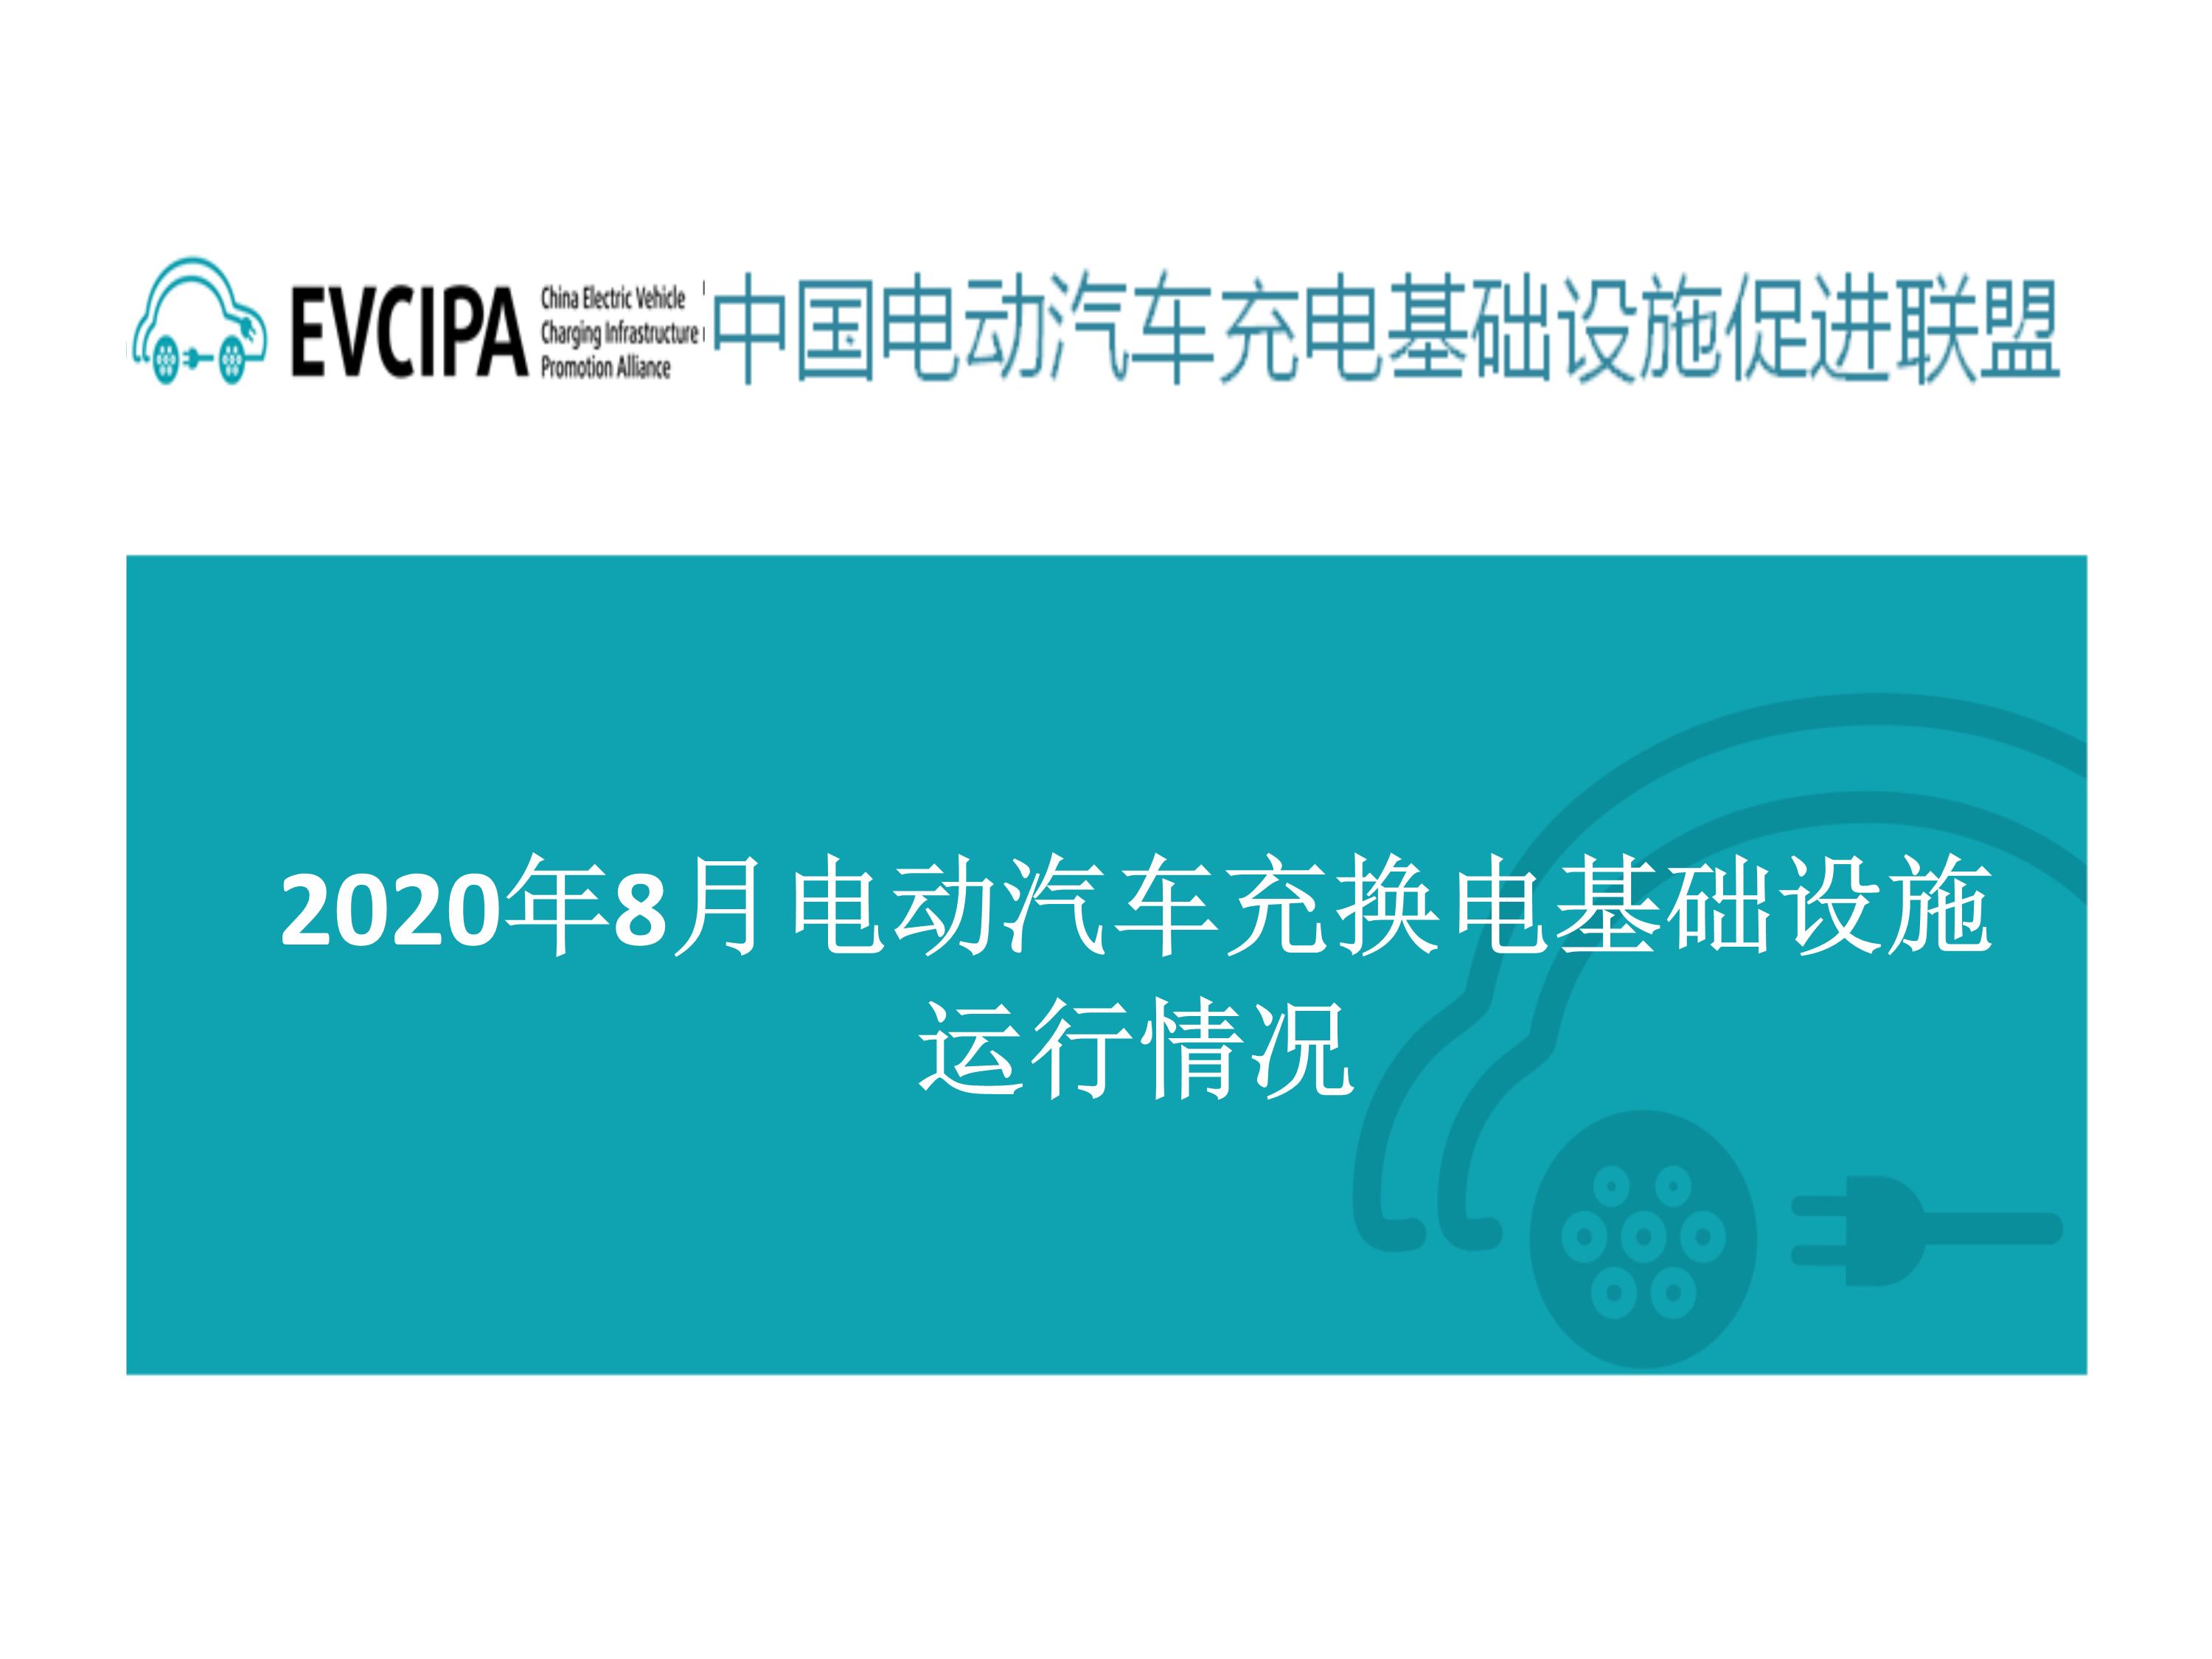 091119110712_06全国电动汽车充电基础设施信息发布稿-202008_0